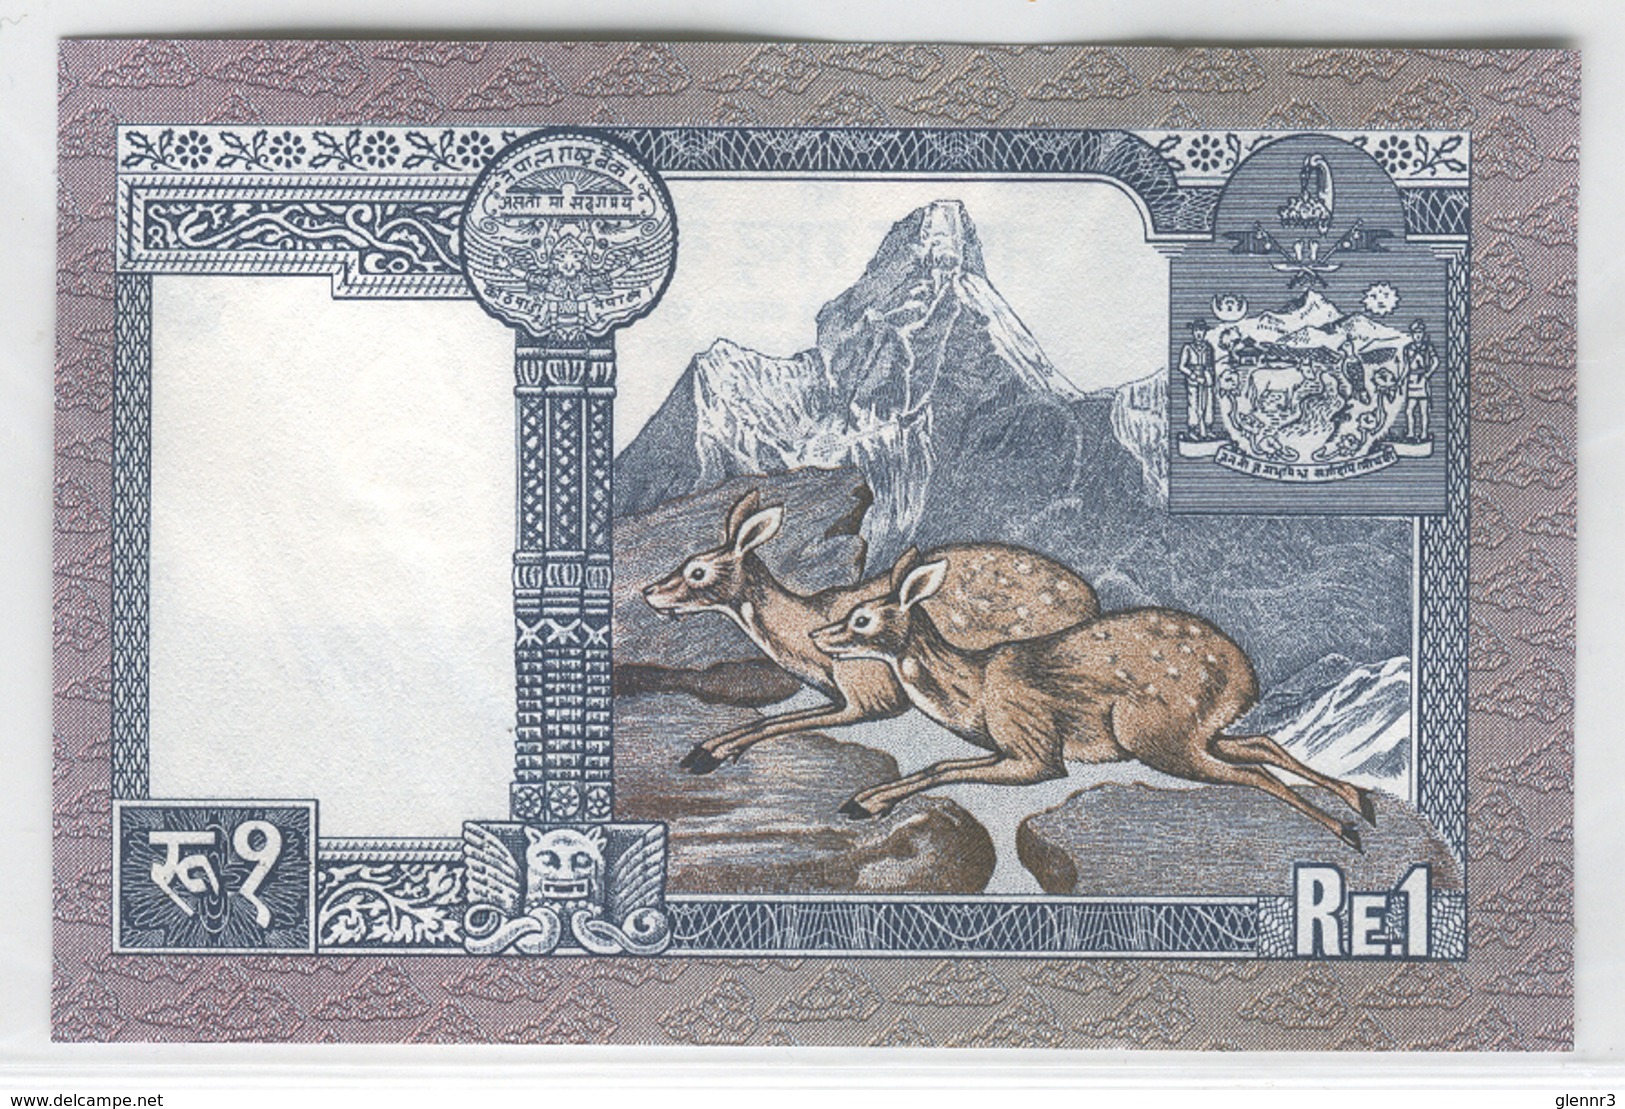 NEPAL 22 1974 1 Rupee UNC - Nepal